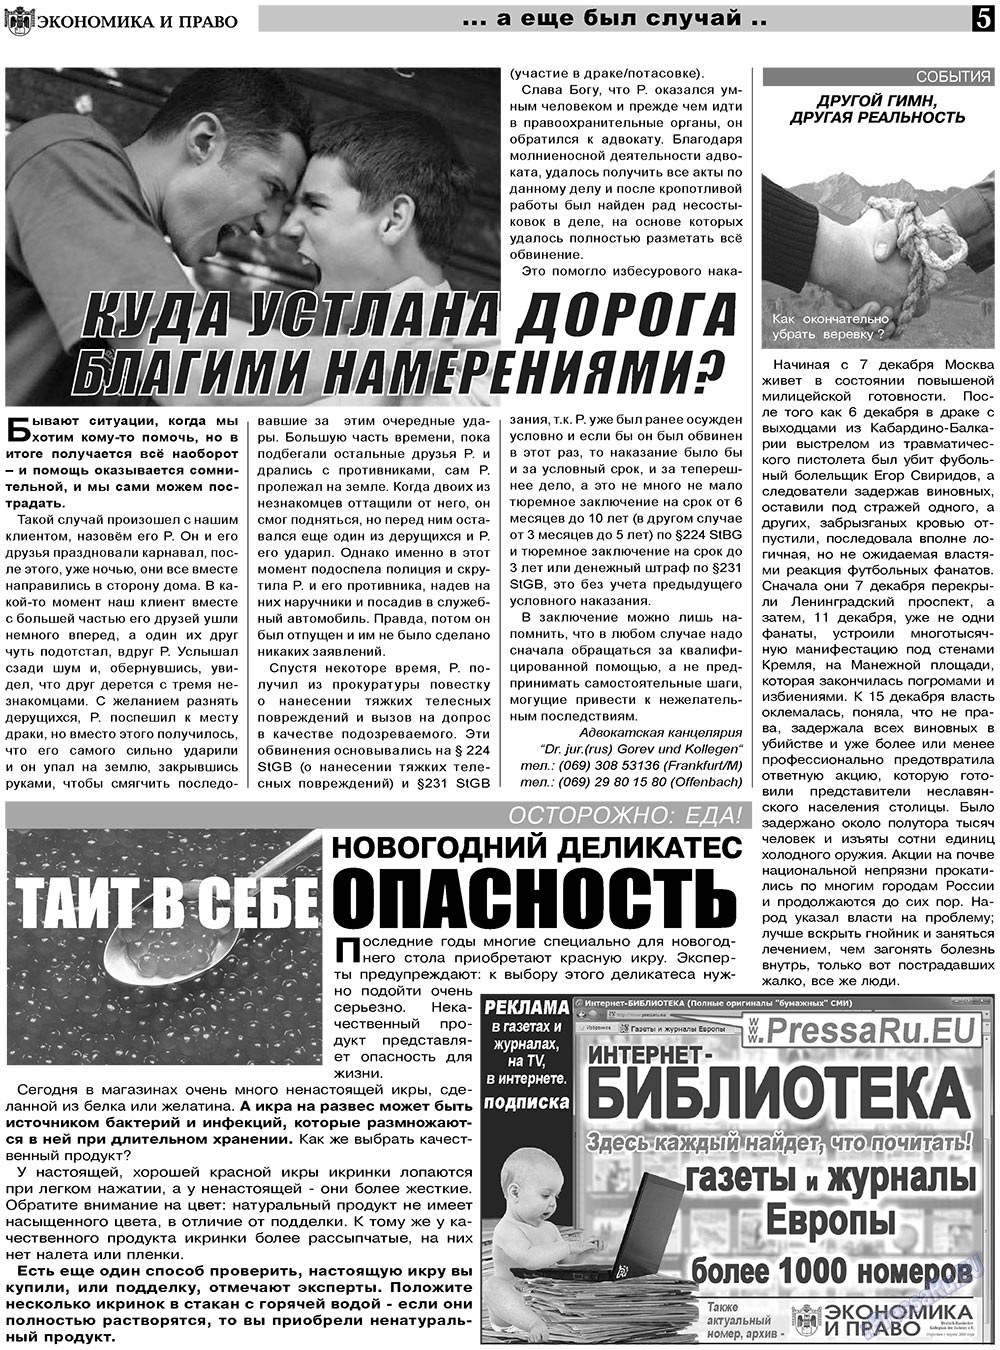 Экономика и право, газета. 2011 №1 стр.5